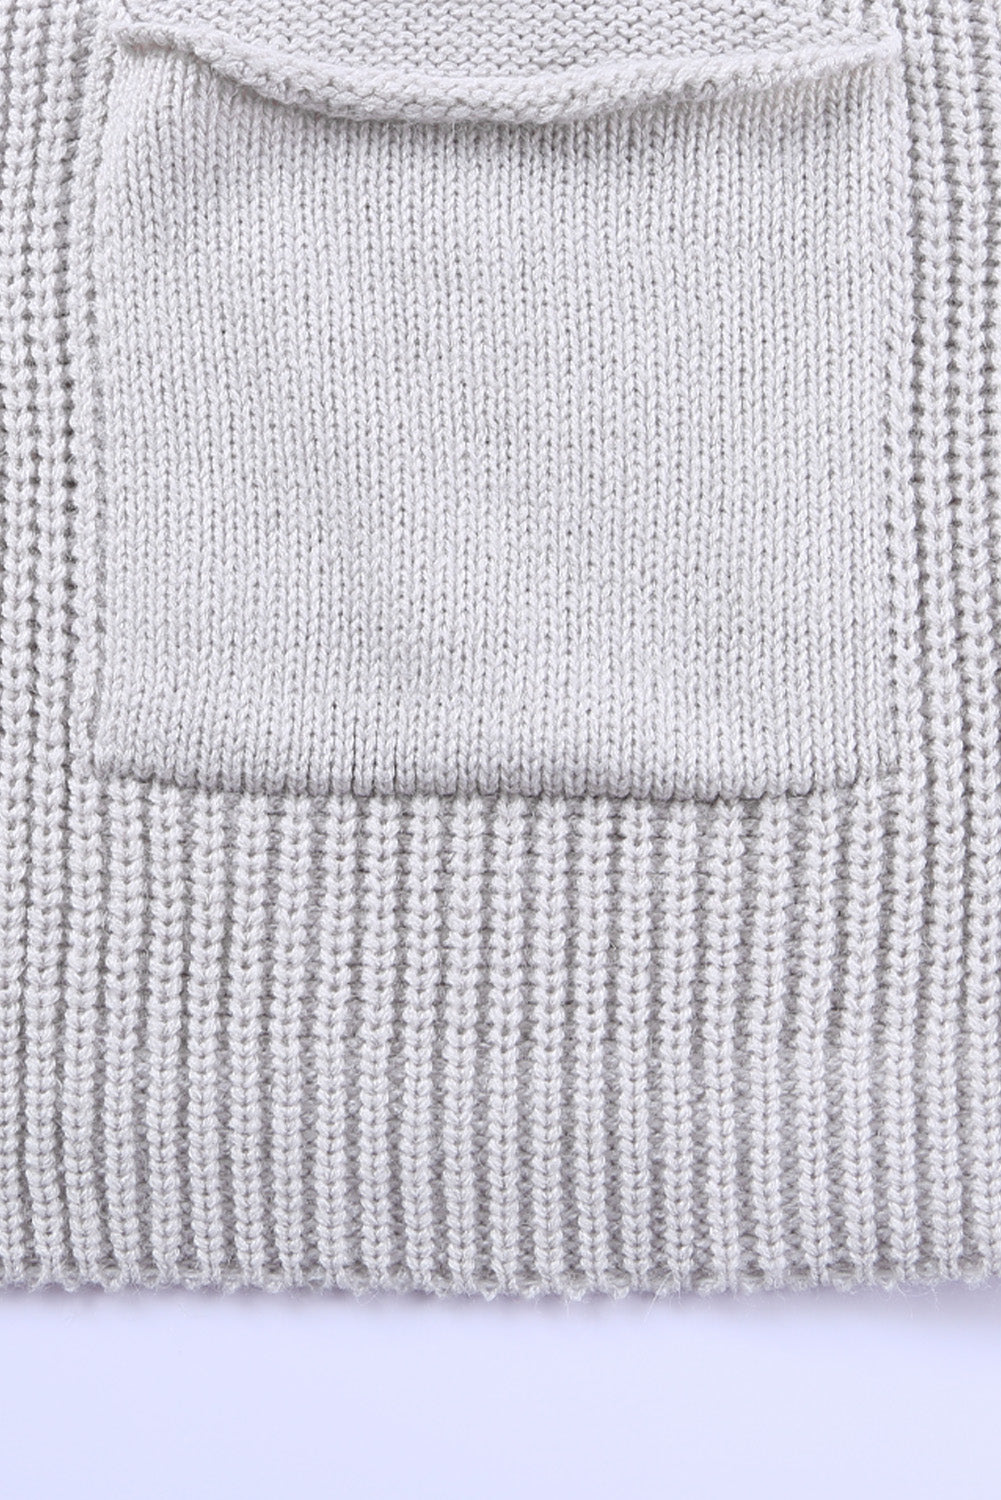 Women's Khaki Batwing Sleeve Pocket Oversized Cable Knit Cardigan